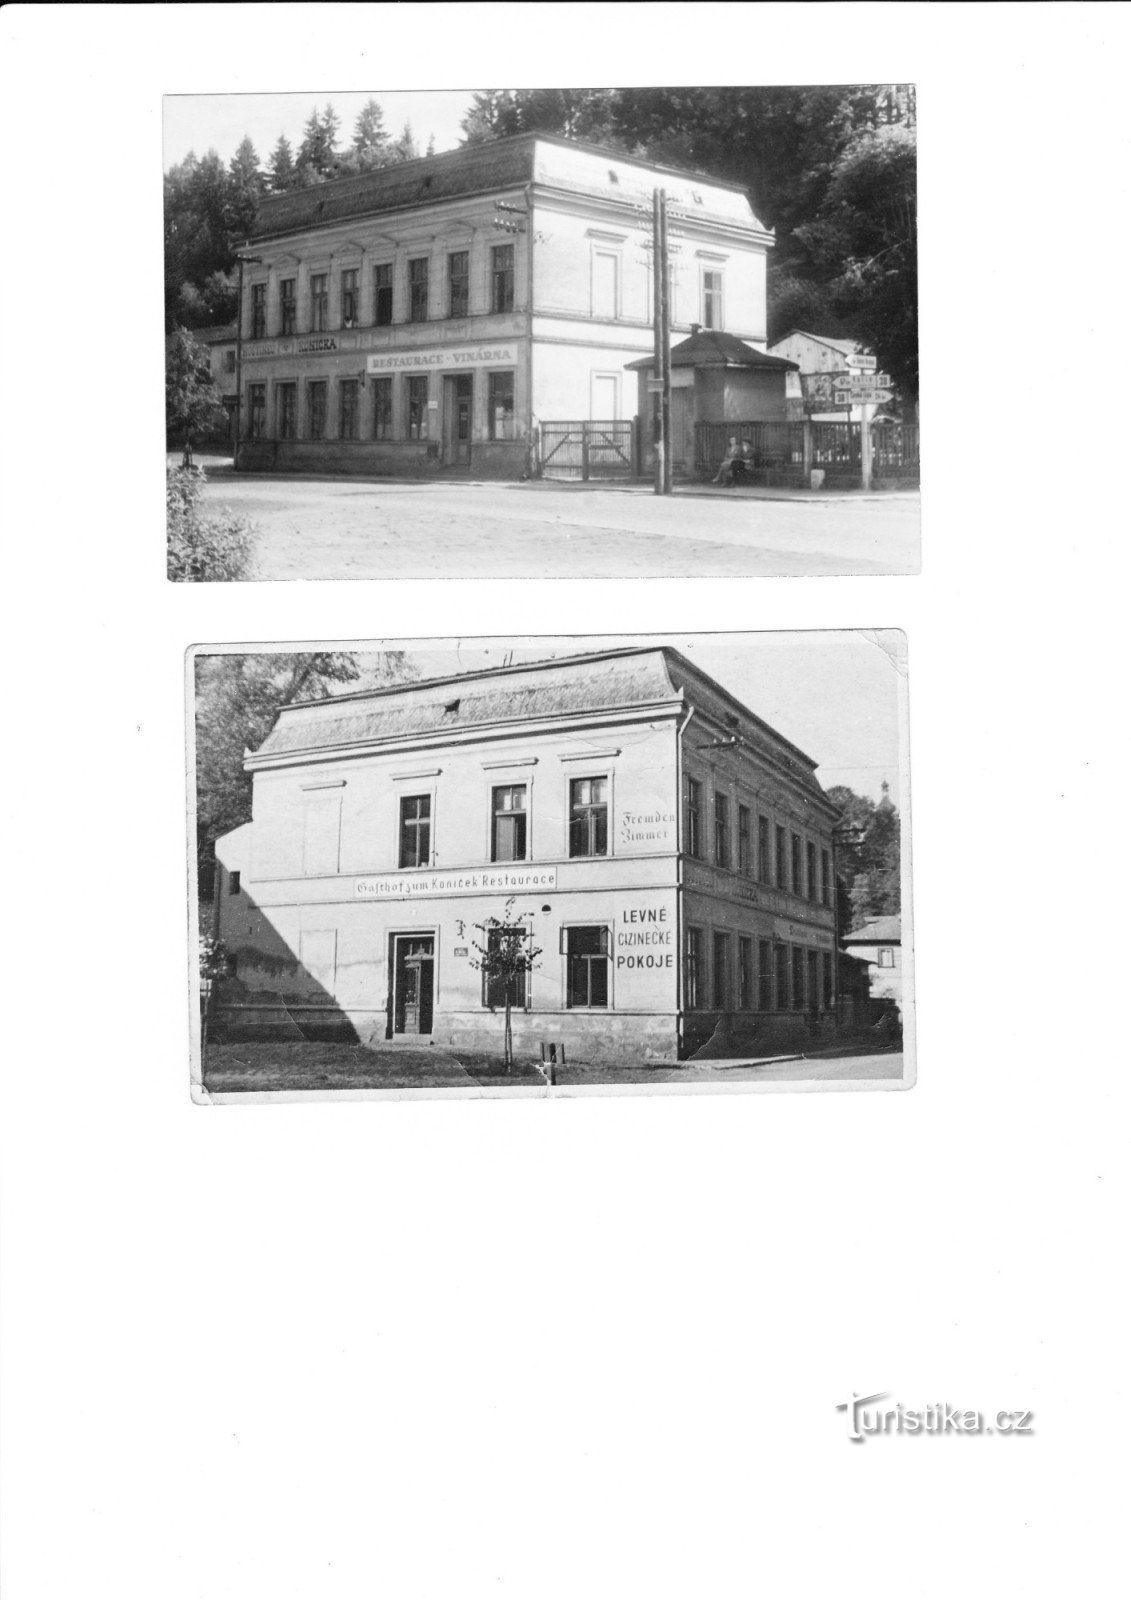 das ursprüngliche Hotel Koníček - das Eigentum des Großvaters von Herrn Šenekl